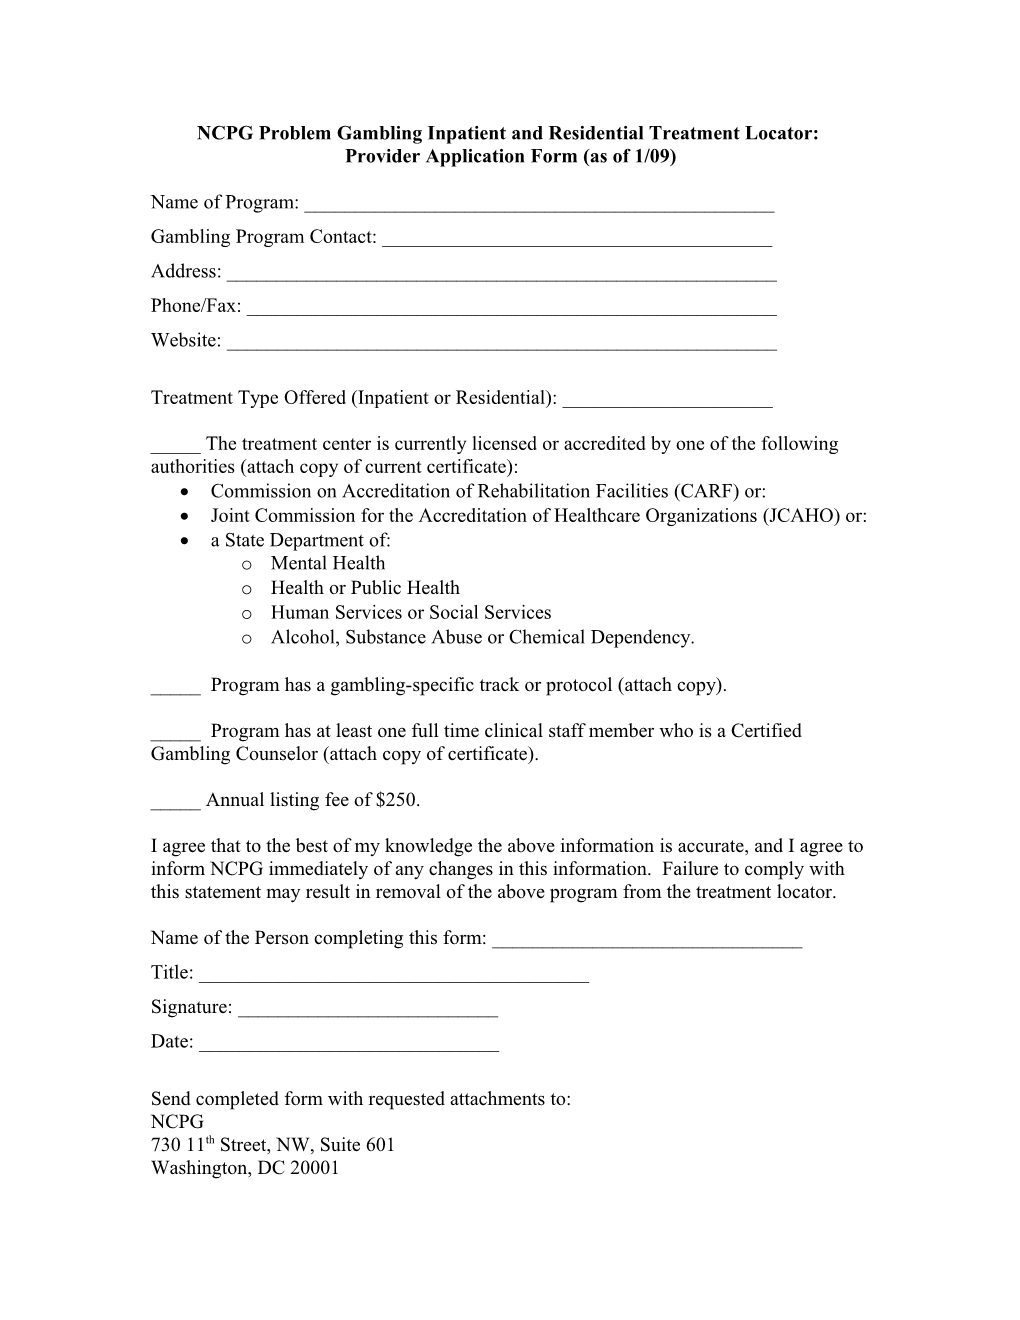 Provider Application Form